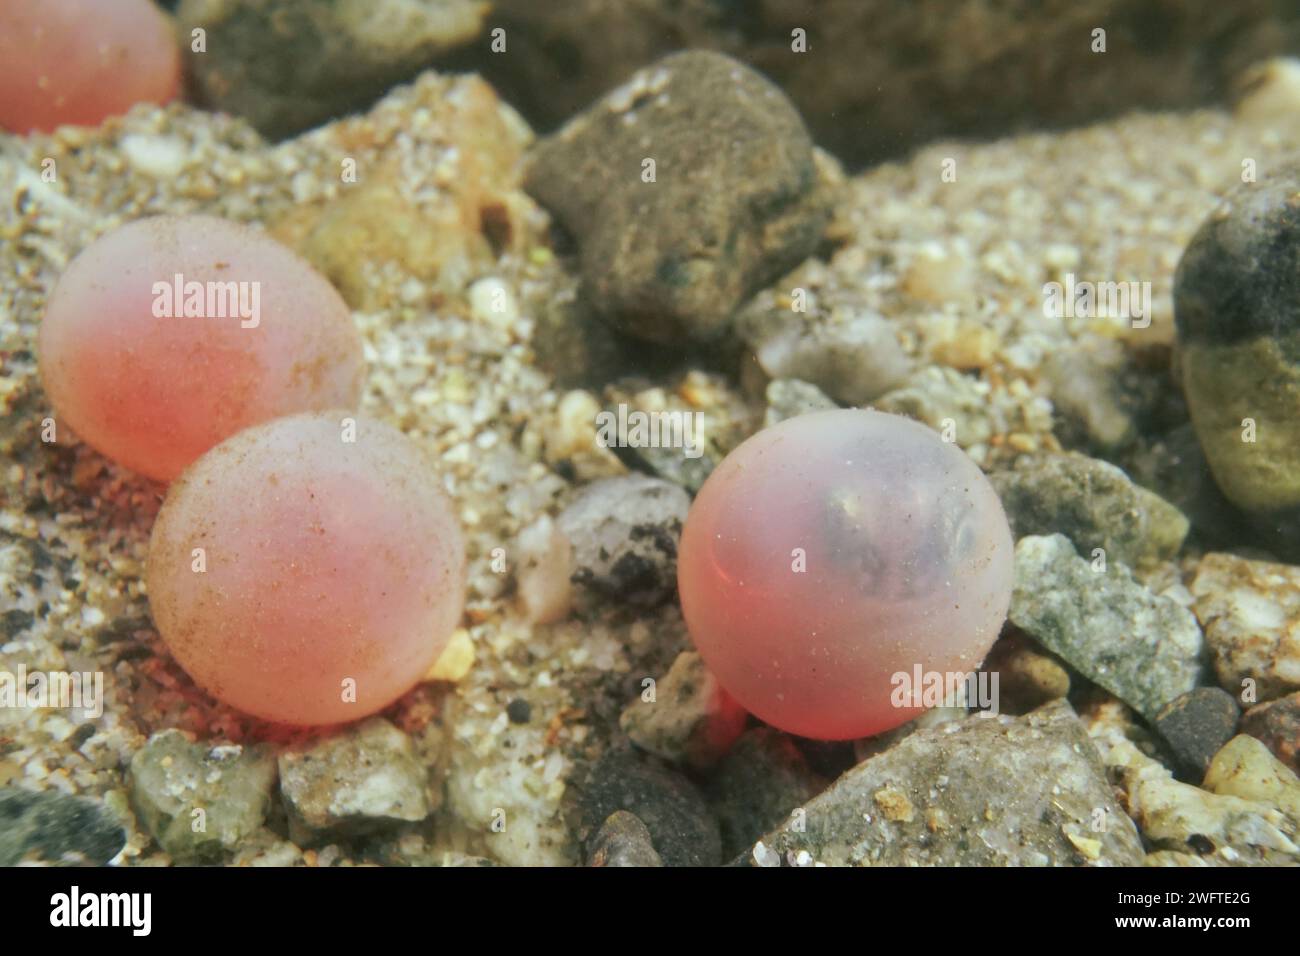 Le uova di salmone stanno per schiudersi e con l'embrione visibile all'interno. Foto Stock